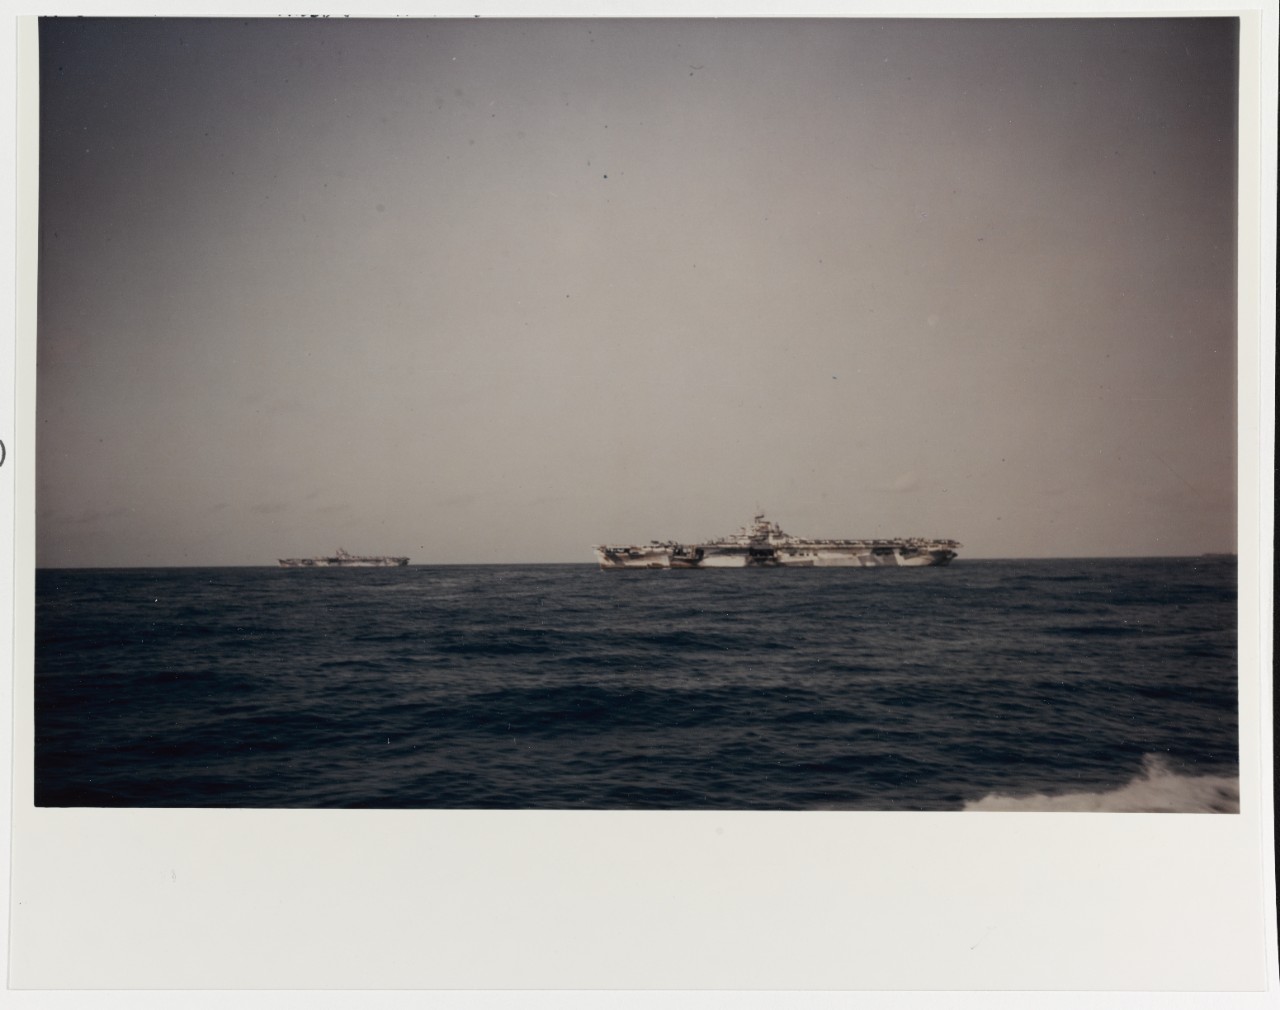 USS YORKTOWN -CV-10 in the distance-left and USS HORNET -CV-12